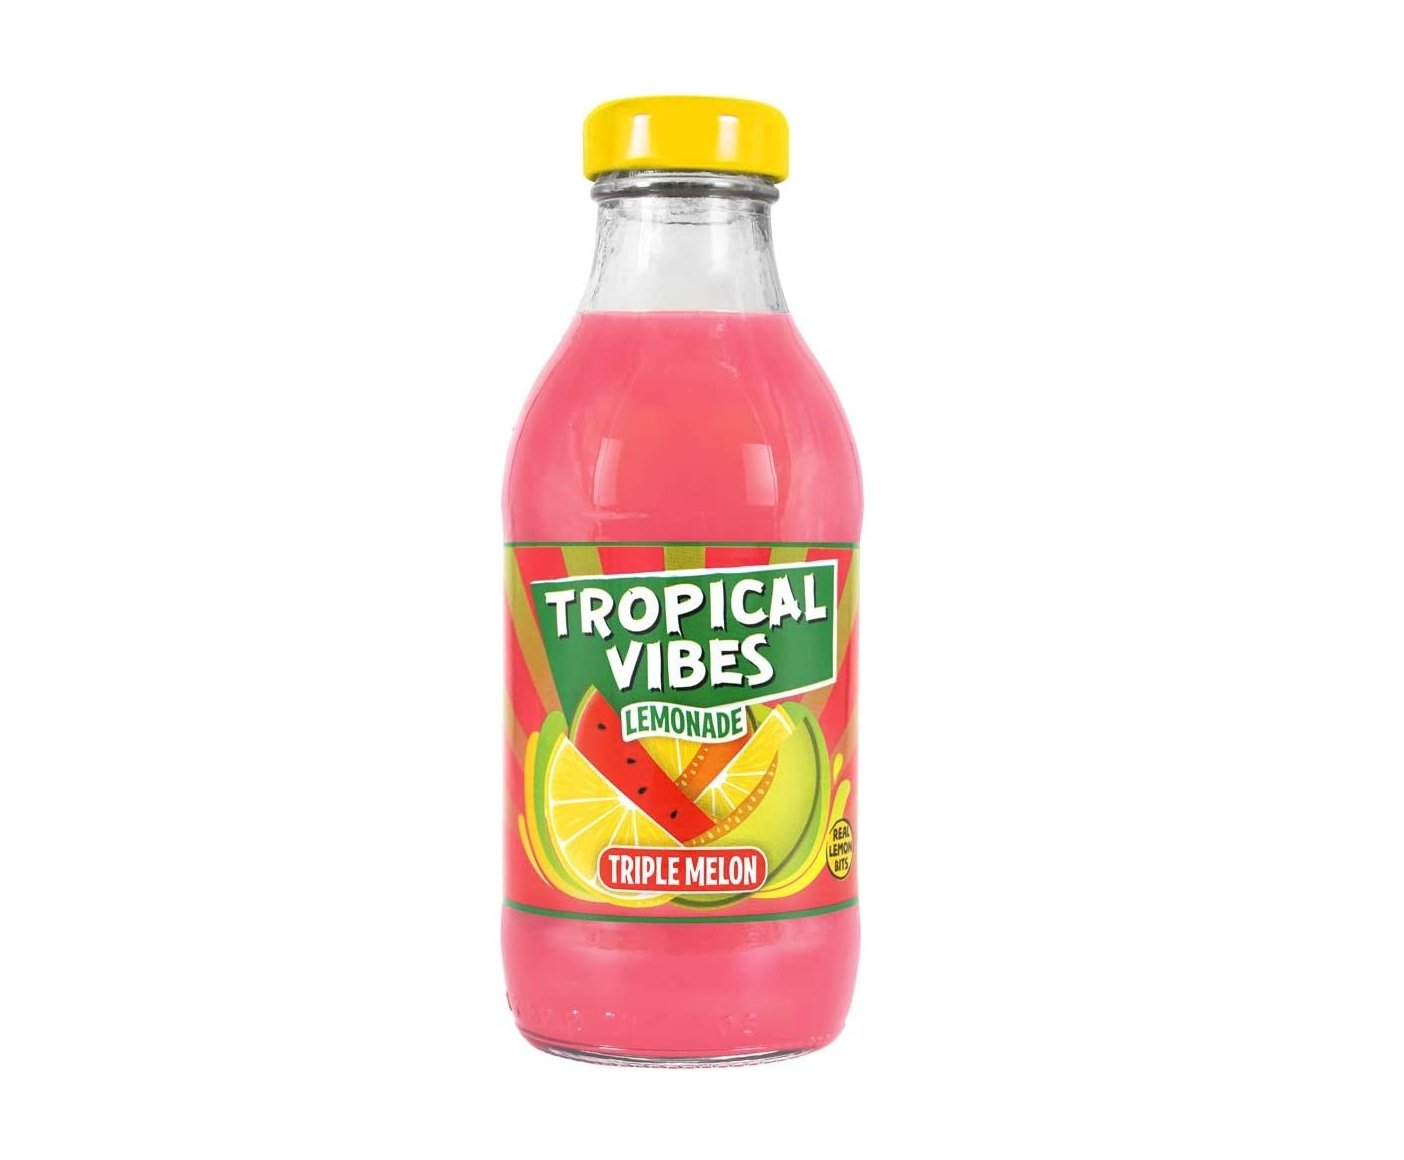 Tropical Vibes Lemonade Triple Melon 300ml Case of 15